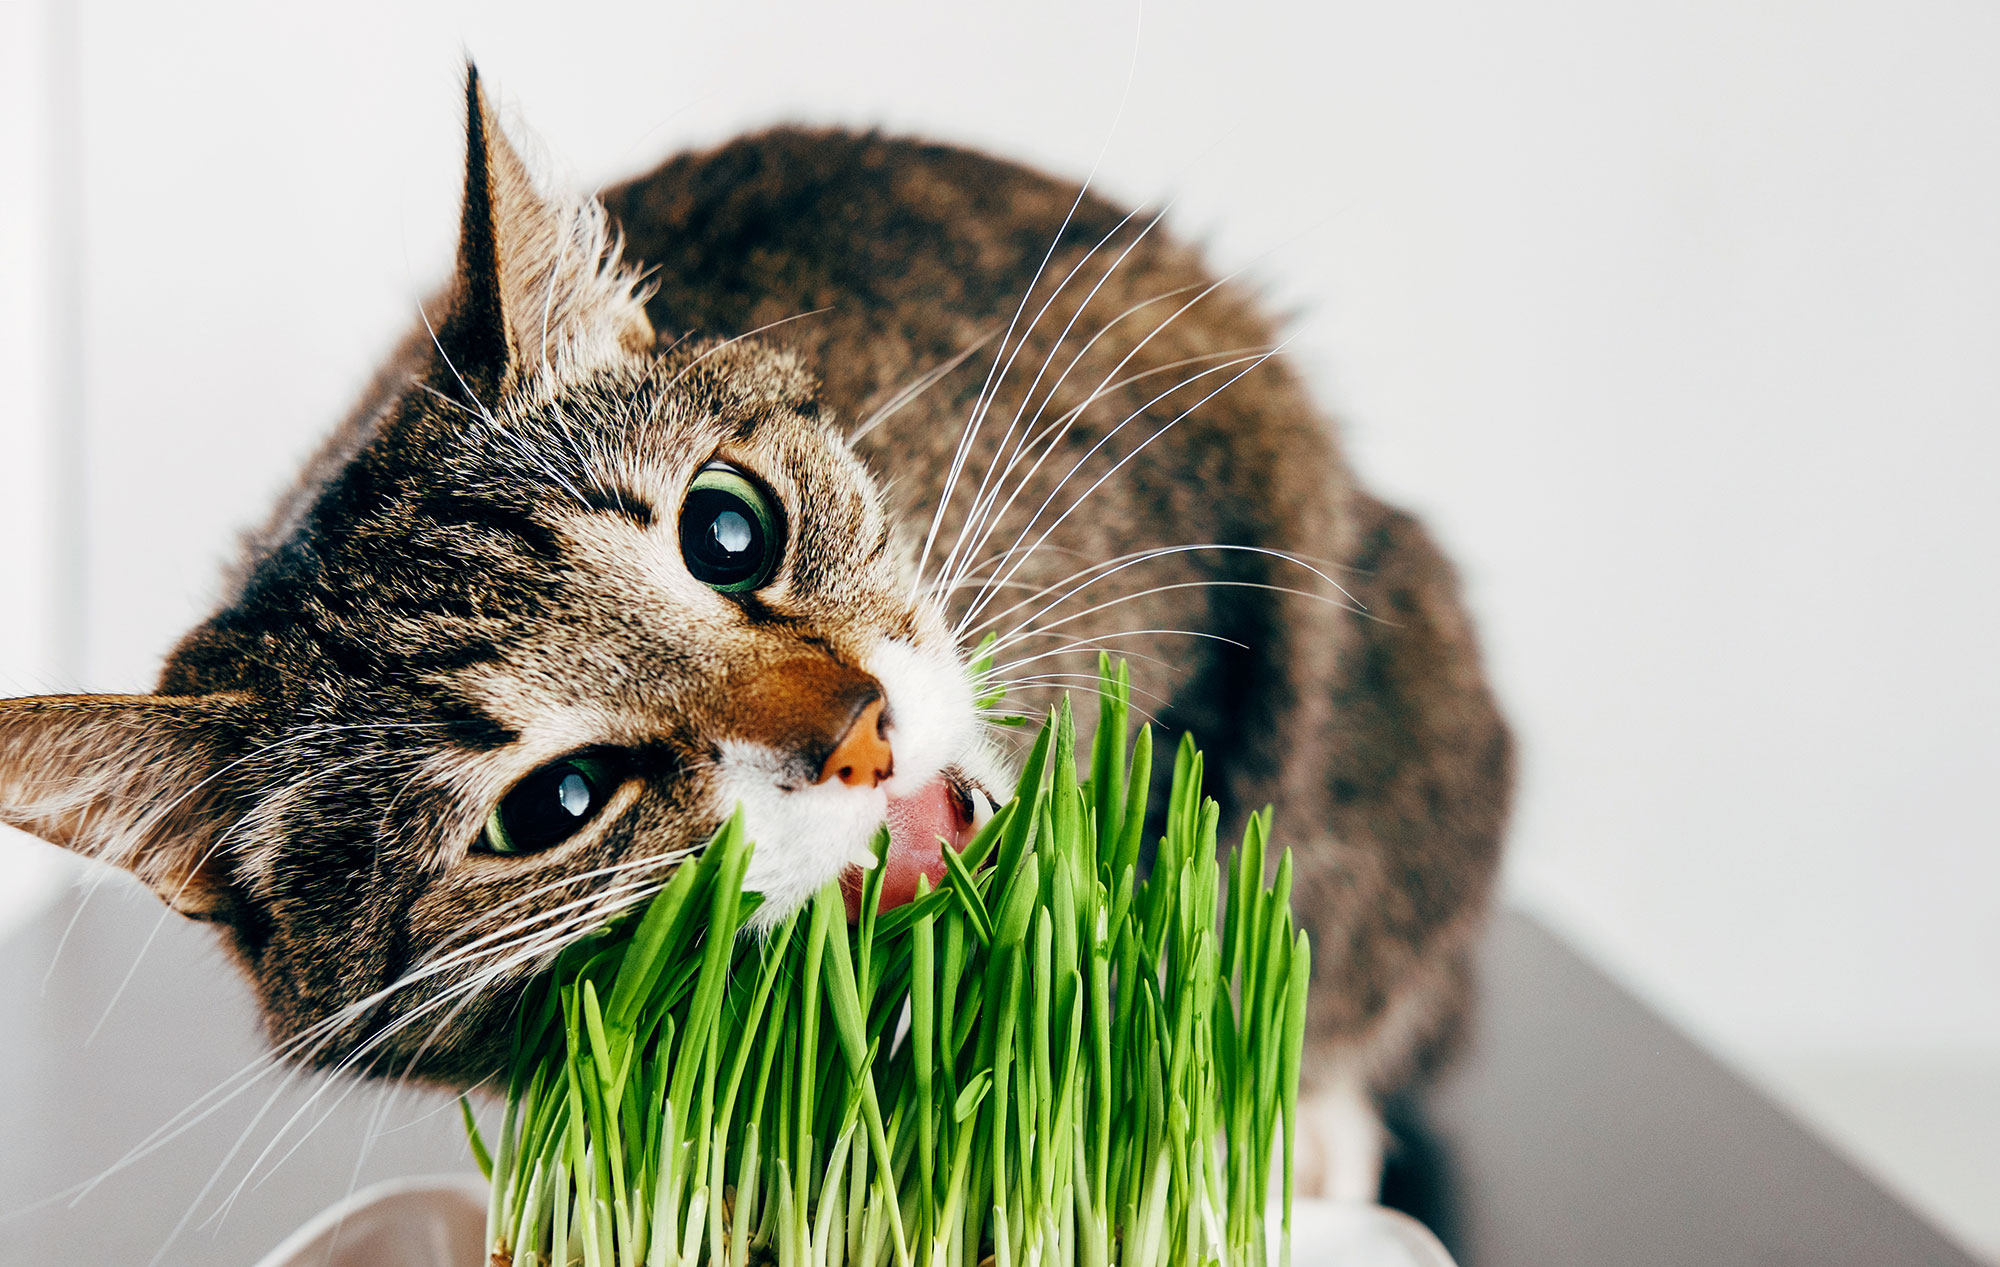 agripet-healthy-greens-cat-dog-pet-grass-01